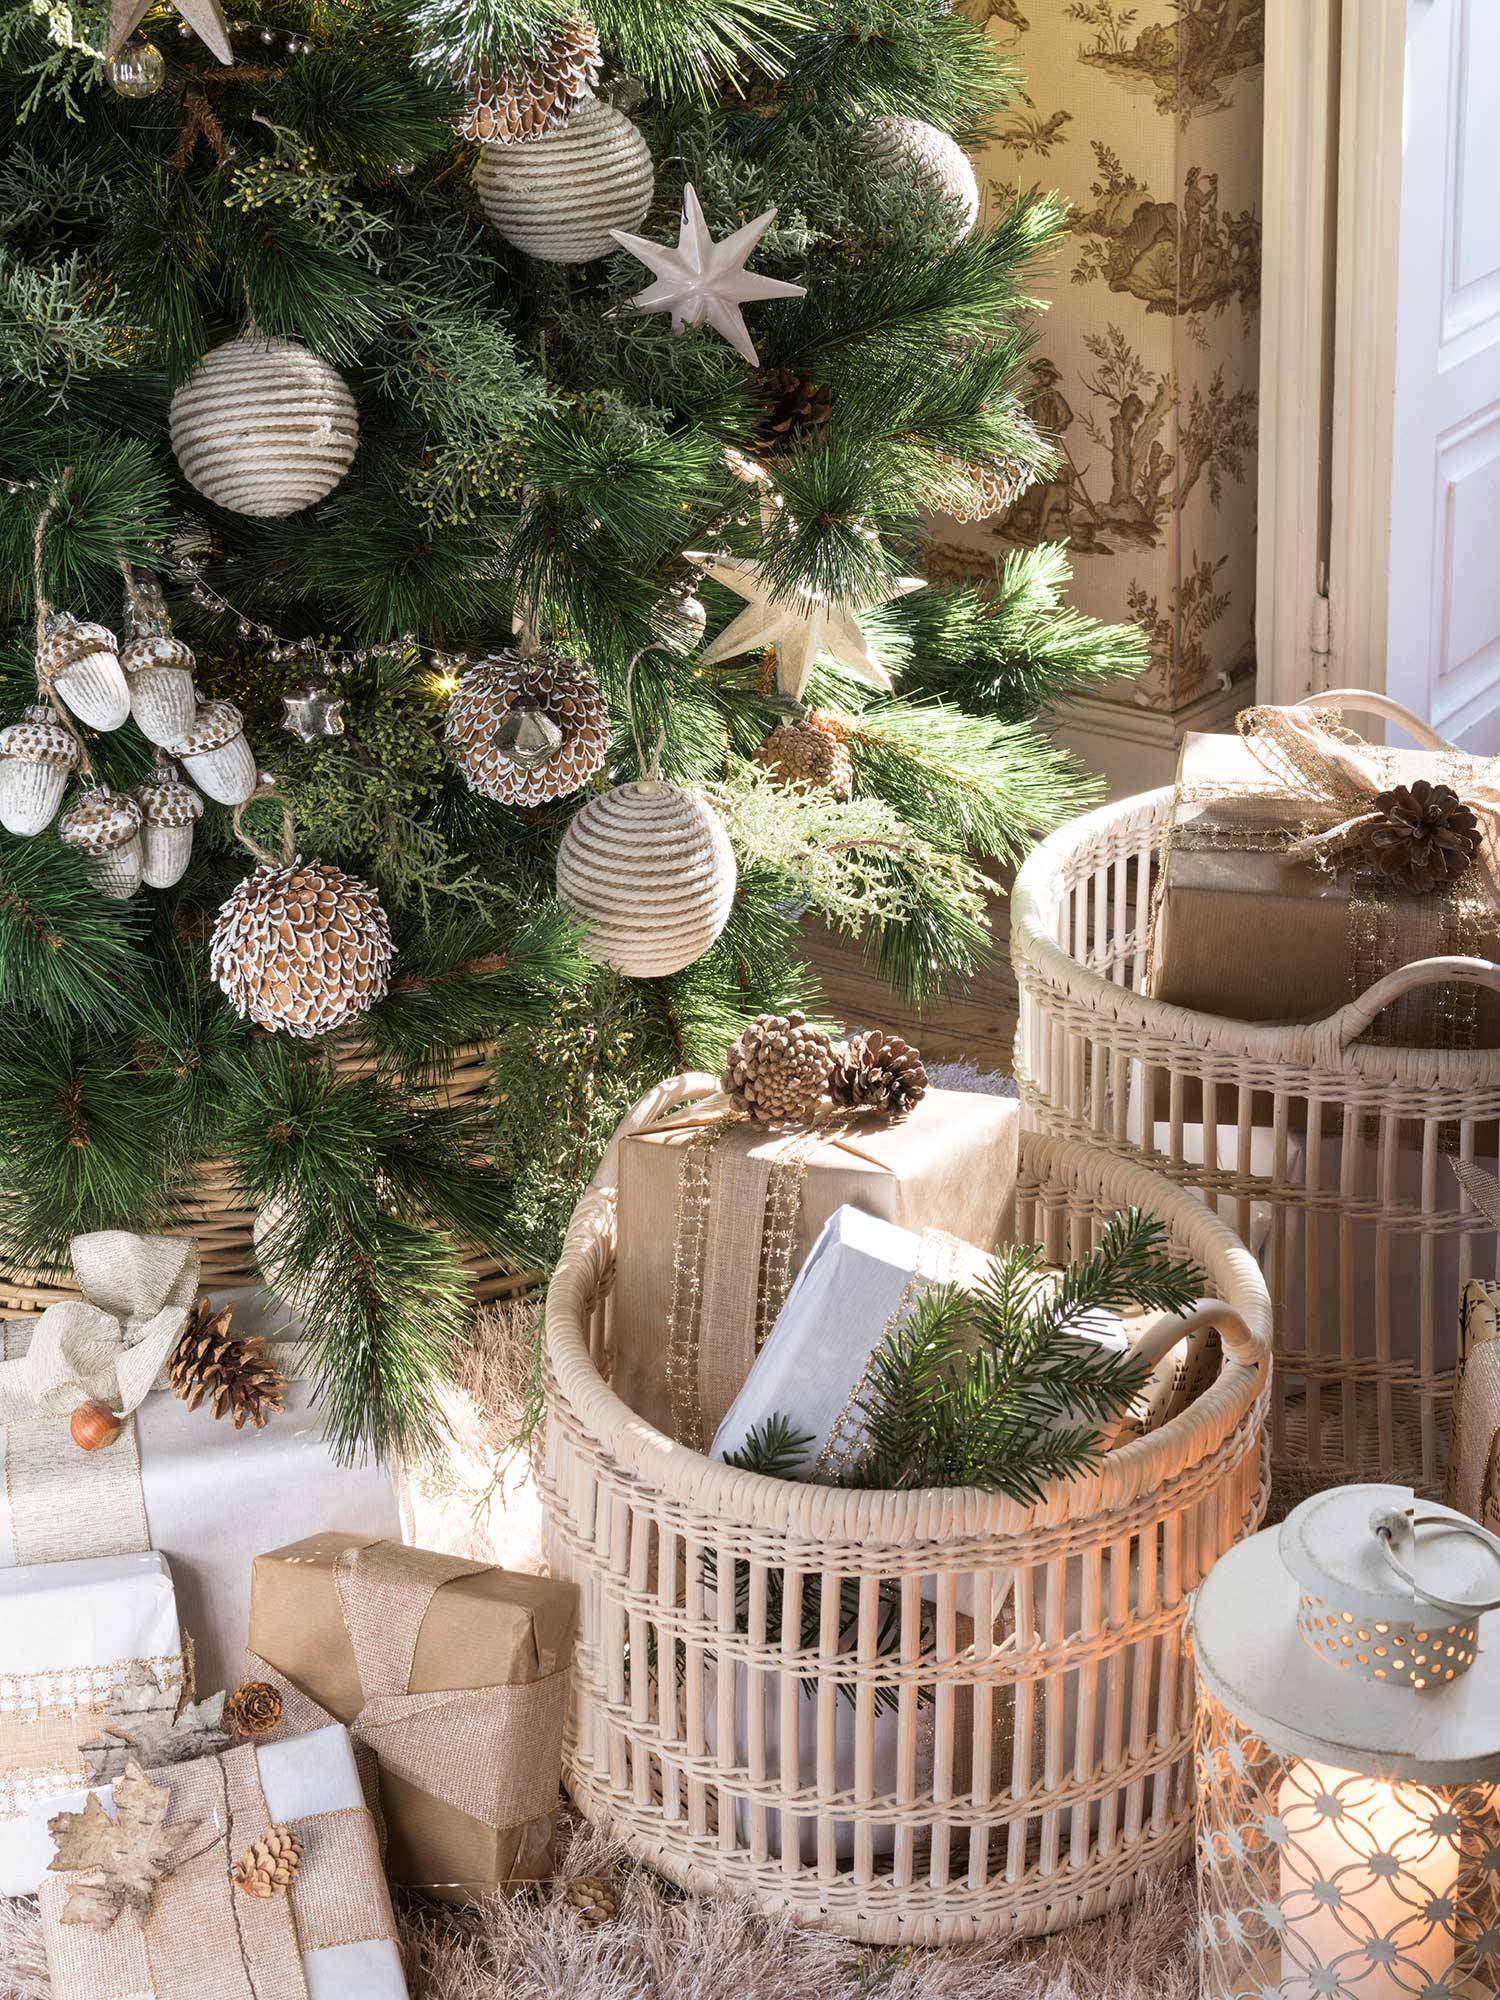 de 50 ideas decoración de Navidad originales, fáciles que puedes hacer tú